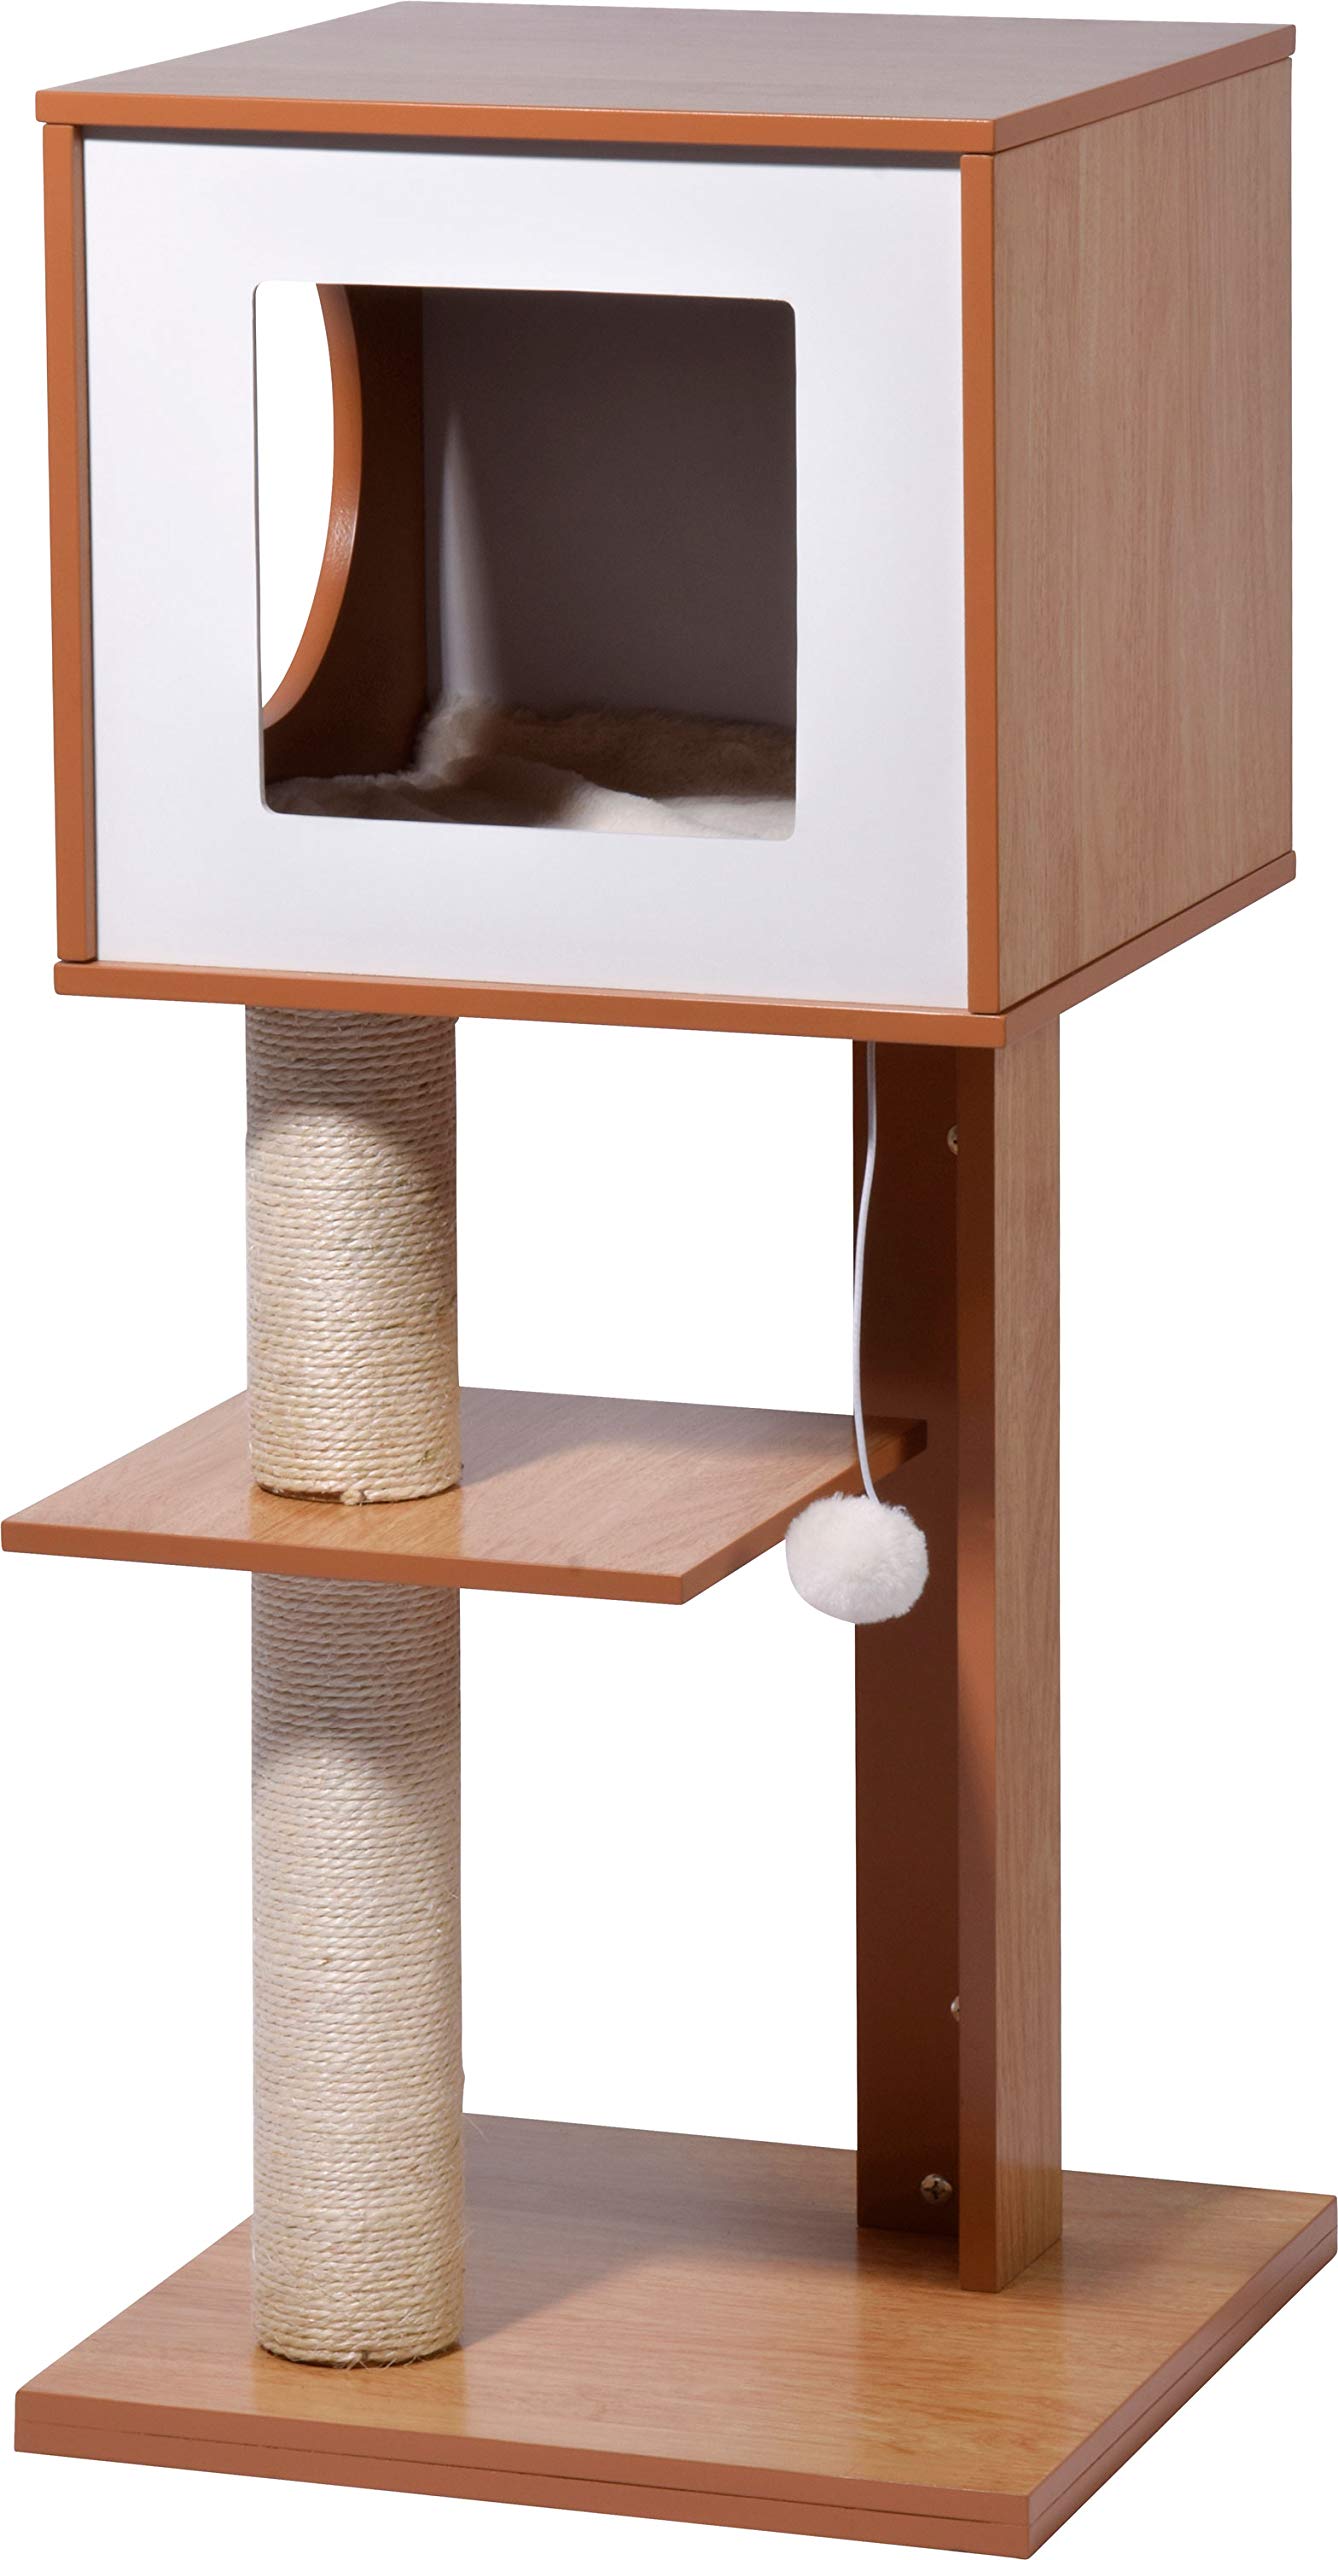 dobar® 35279FSCe Katzen Kratzbaum "Susy" - Katzenmöbel mit Kratzsäule und Spielball - Katzenhöhle mit flauschigem Katzenbett - 49 x 40 x 91 cm - Braun/Weiß